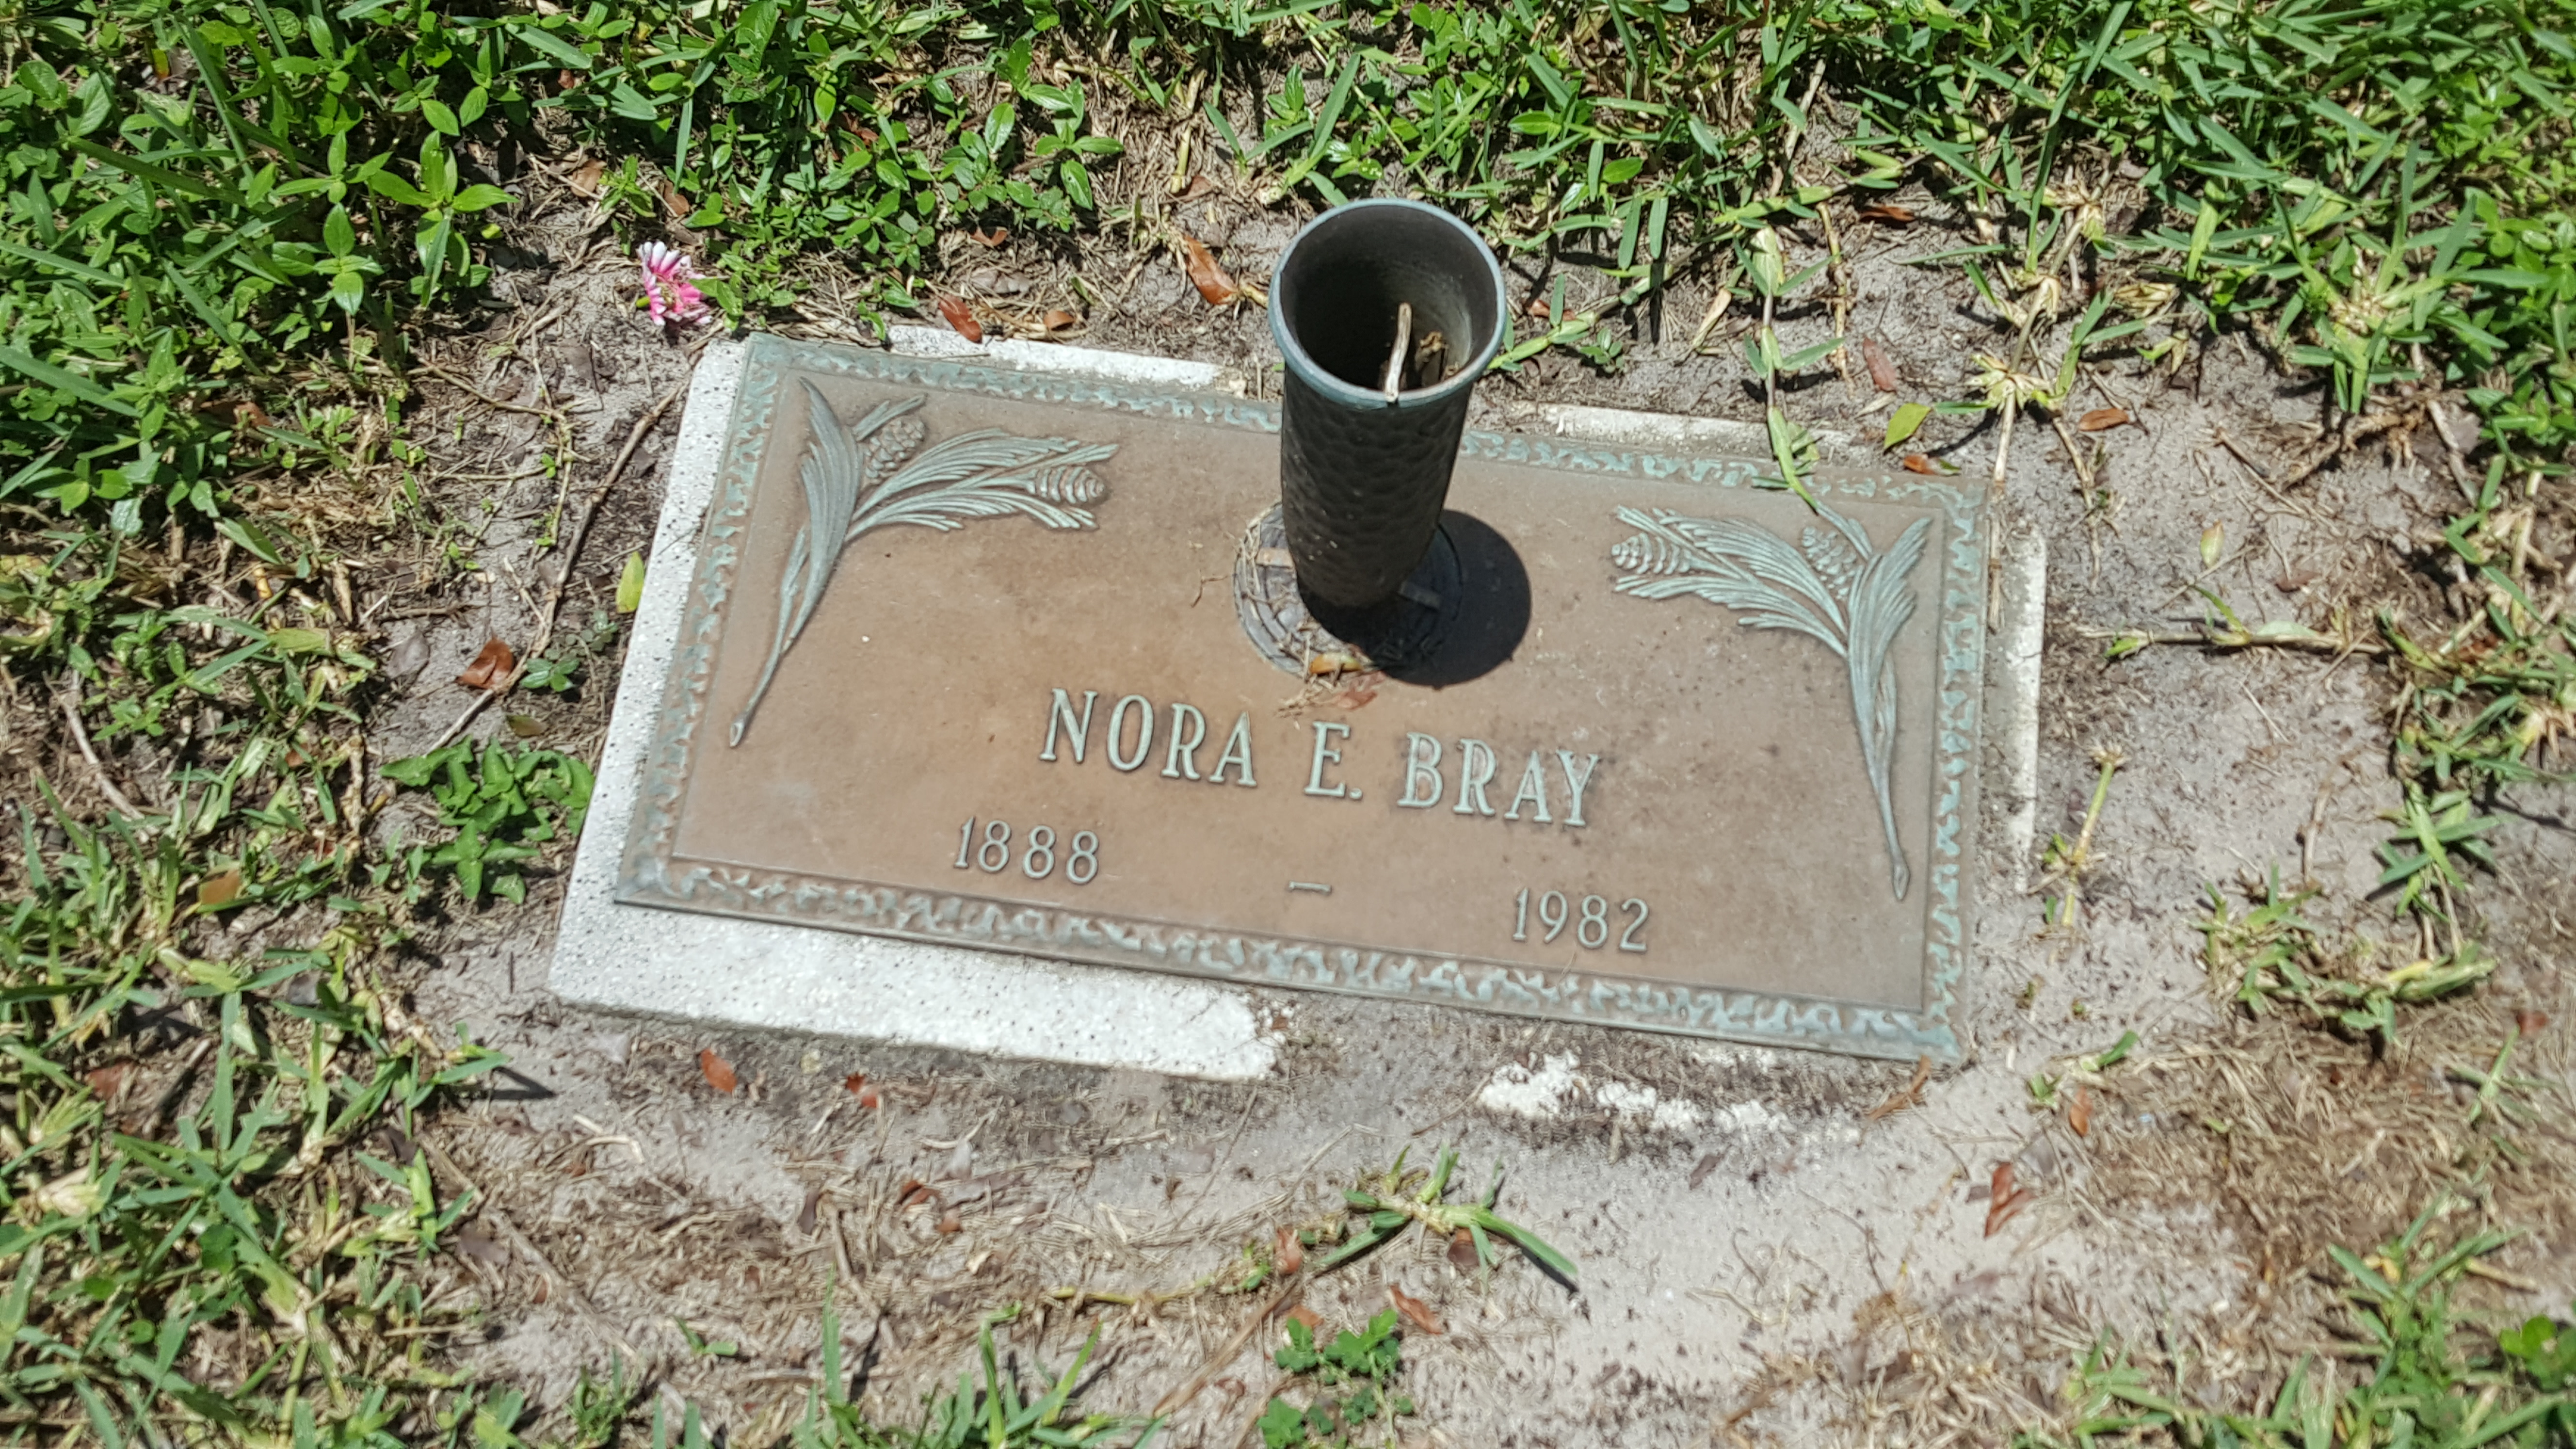 Nora E Bray